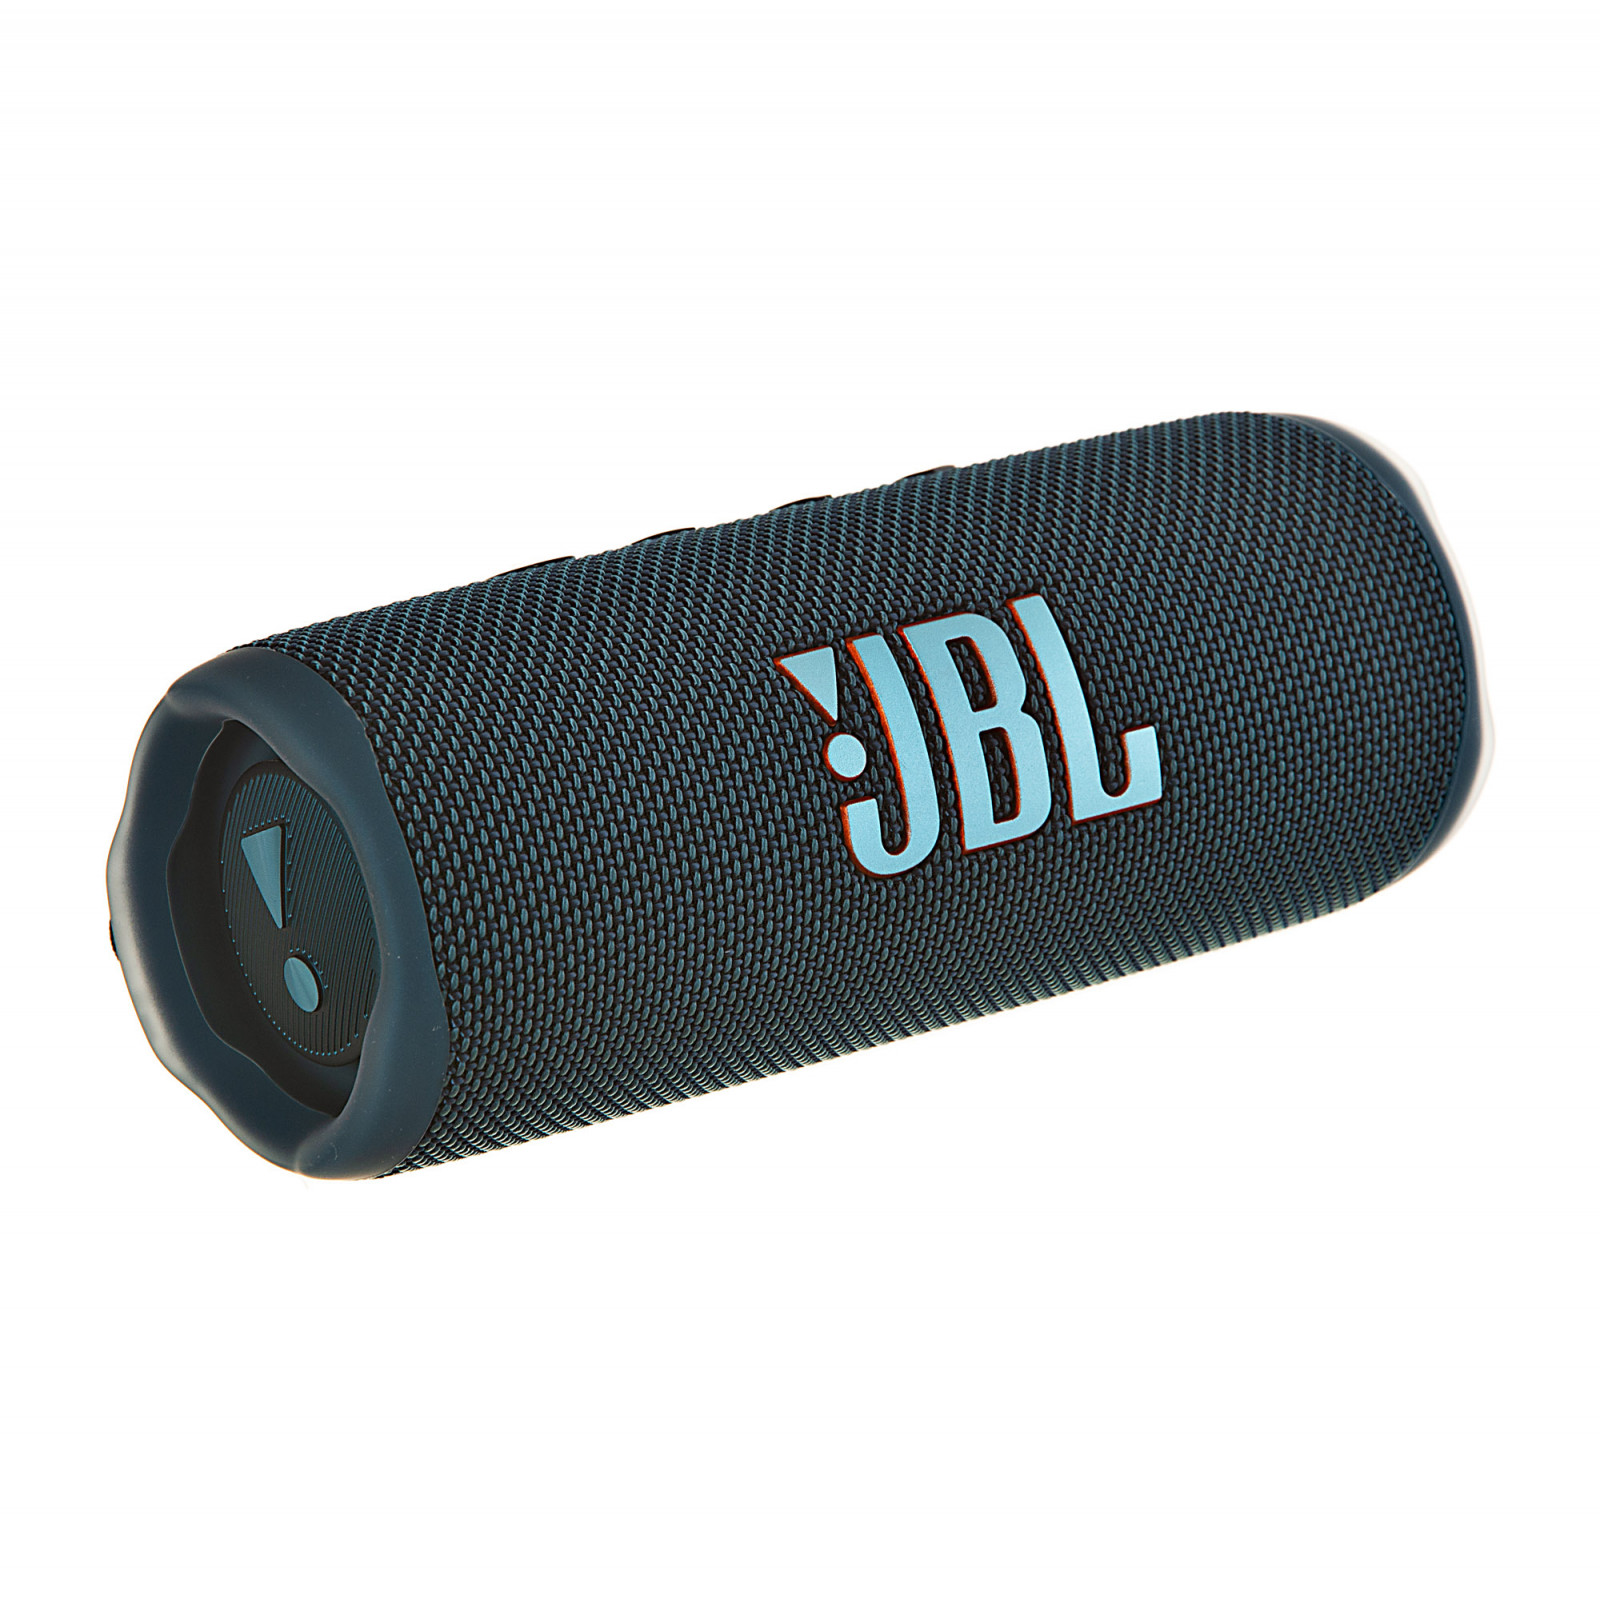 JBL Flip 6 Altavoz Bluetooth Portátil Resistente al Agua/Polvo